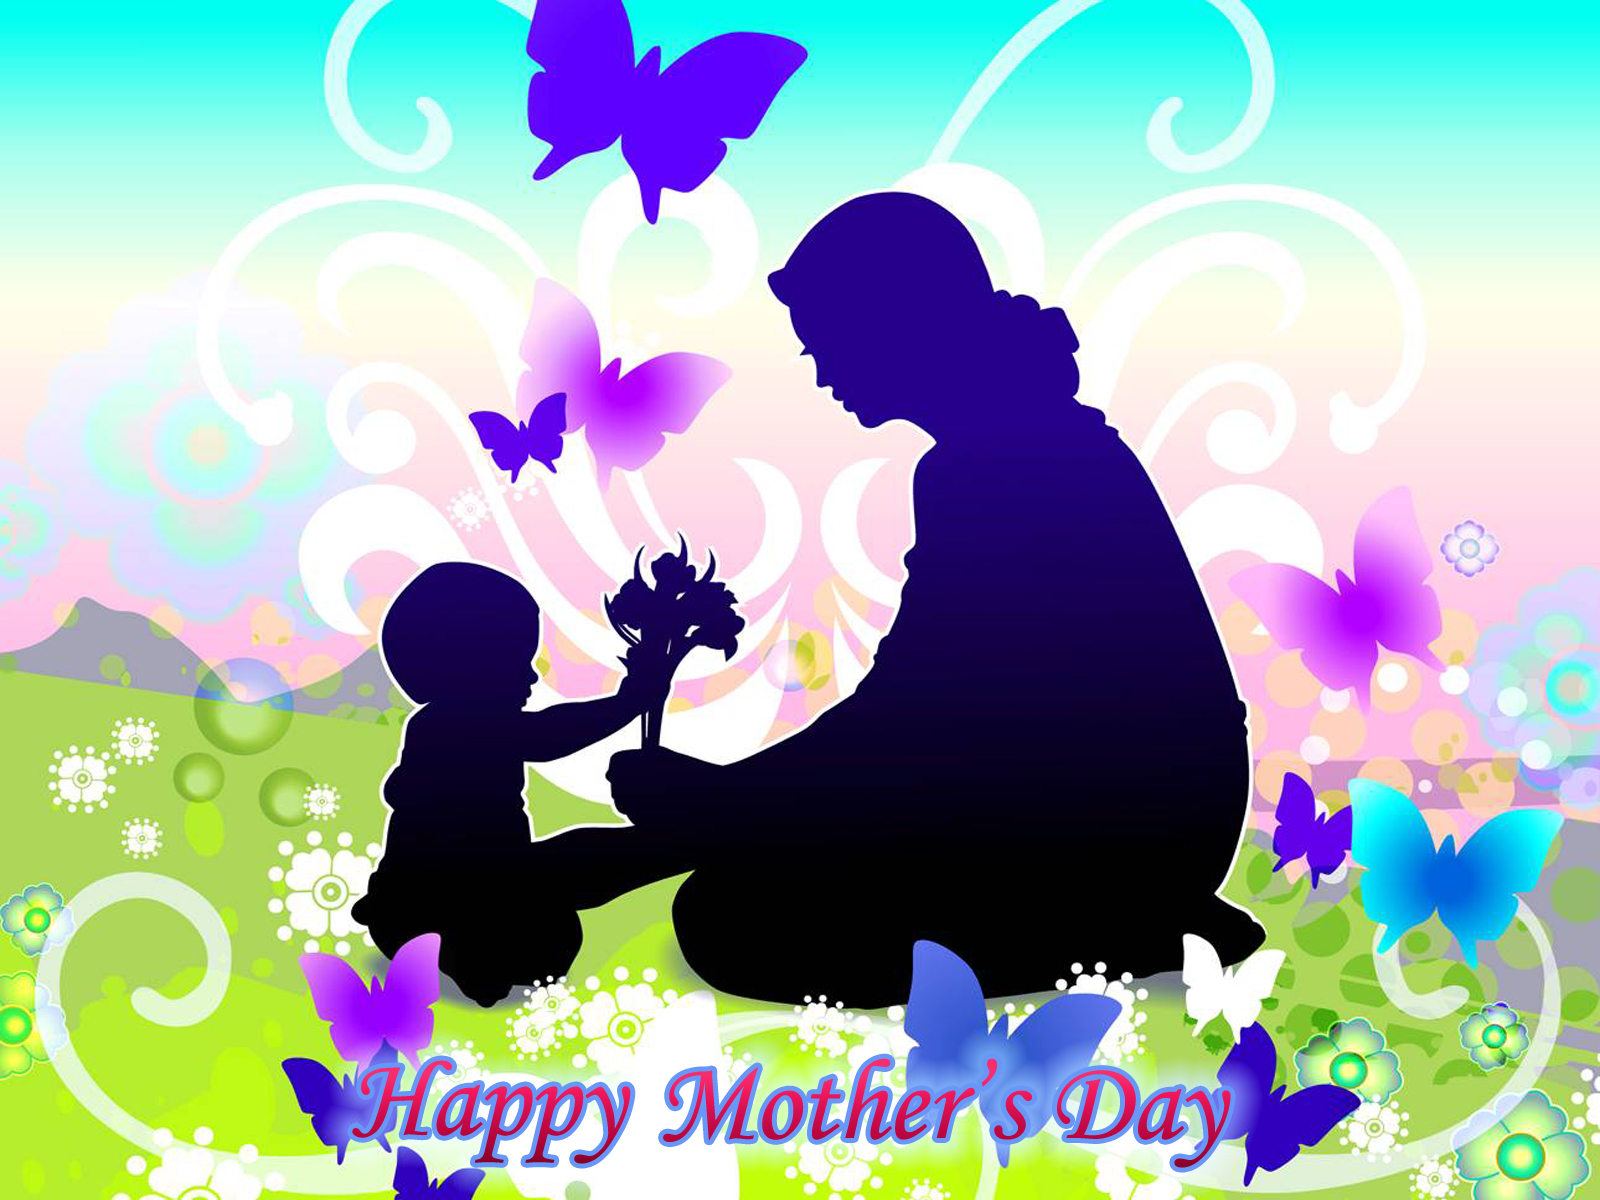 Wallpaper Of Happy Mothers Day Puter Desktop Image